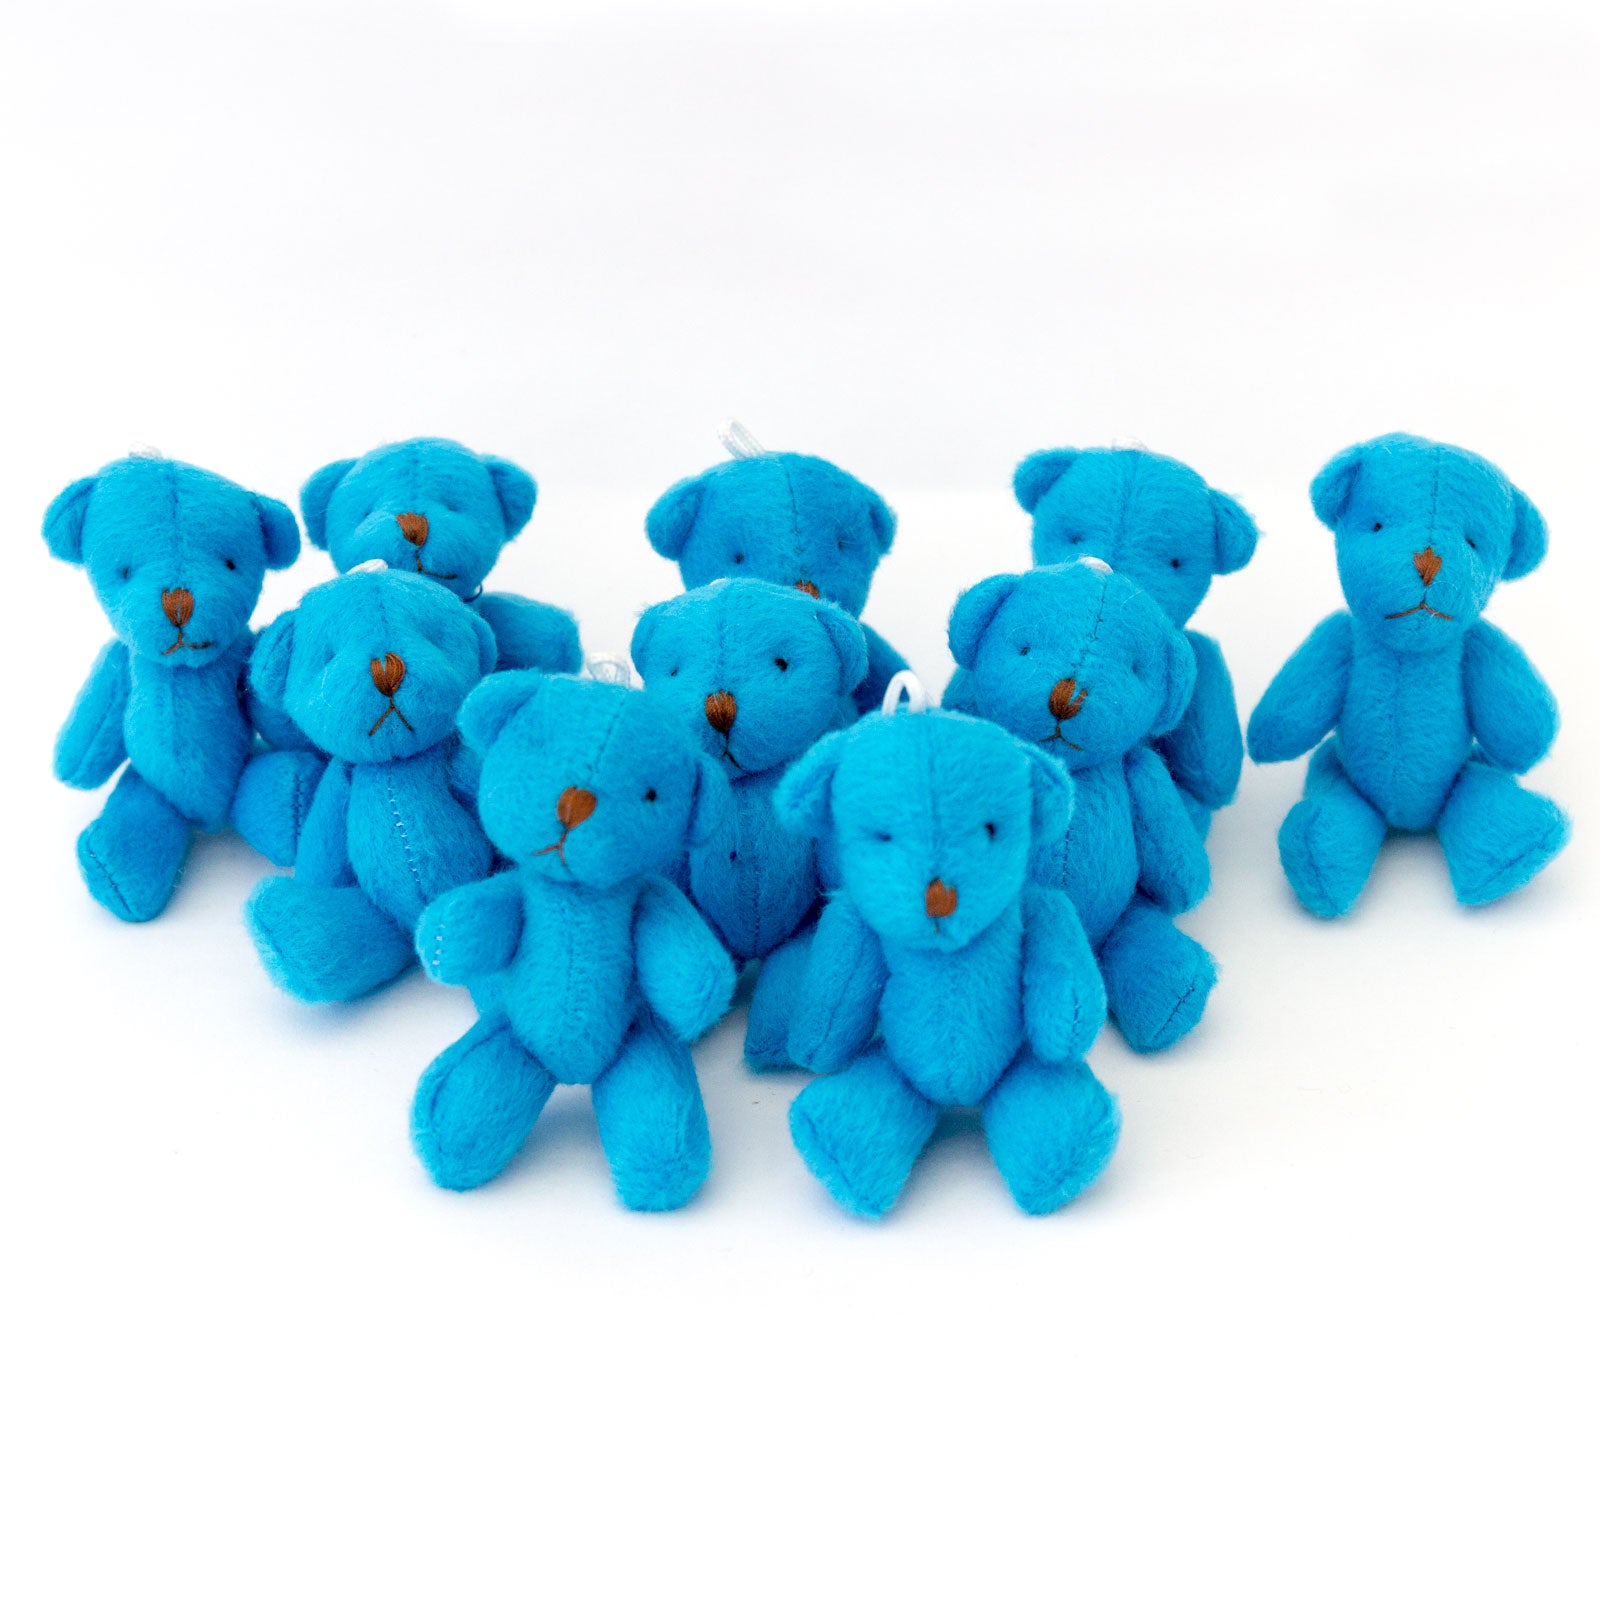 Small BLUE Teddy Bears X 80 - Cute Soft Adorable